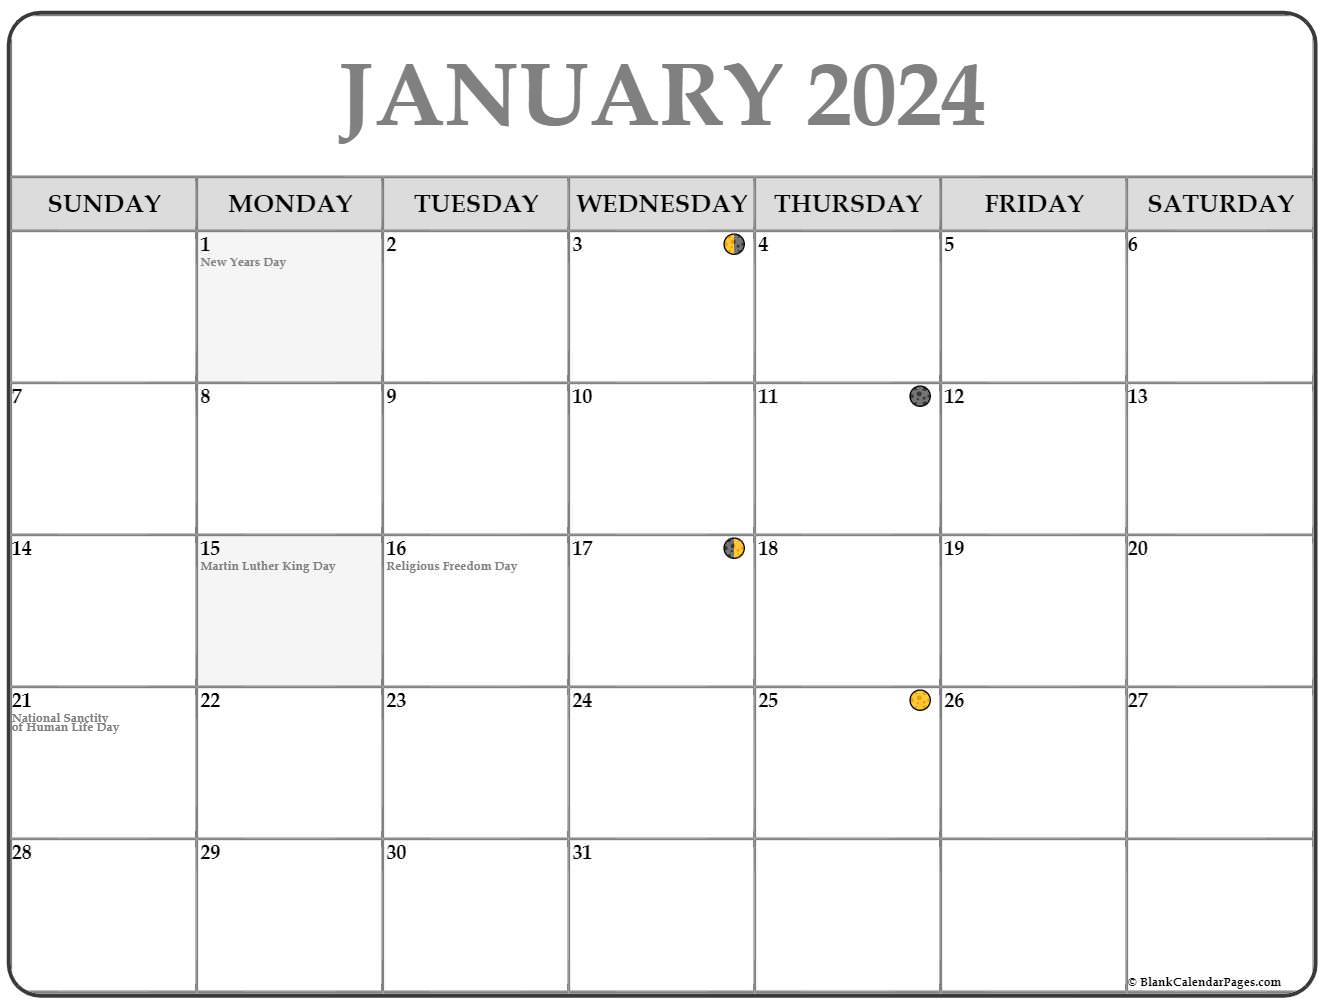 january 2023 lunar calendar moon phase calendar